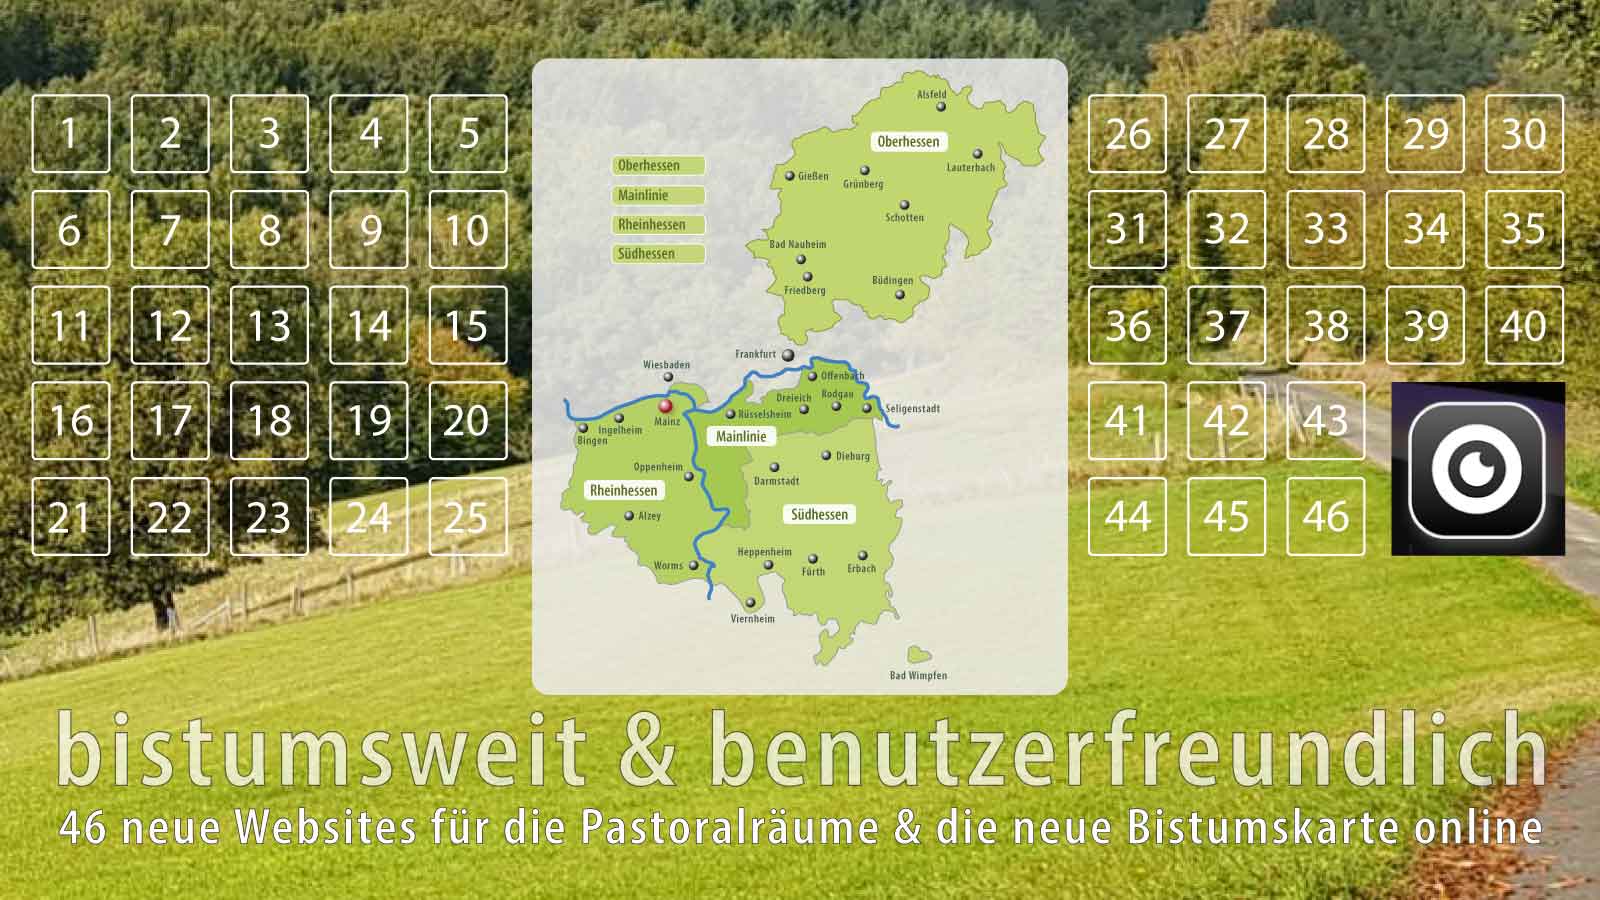 Dachwebsites und neue Bistumskarte (c) sensum.de | Willi Weiers